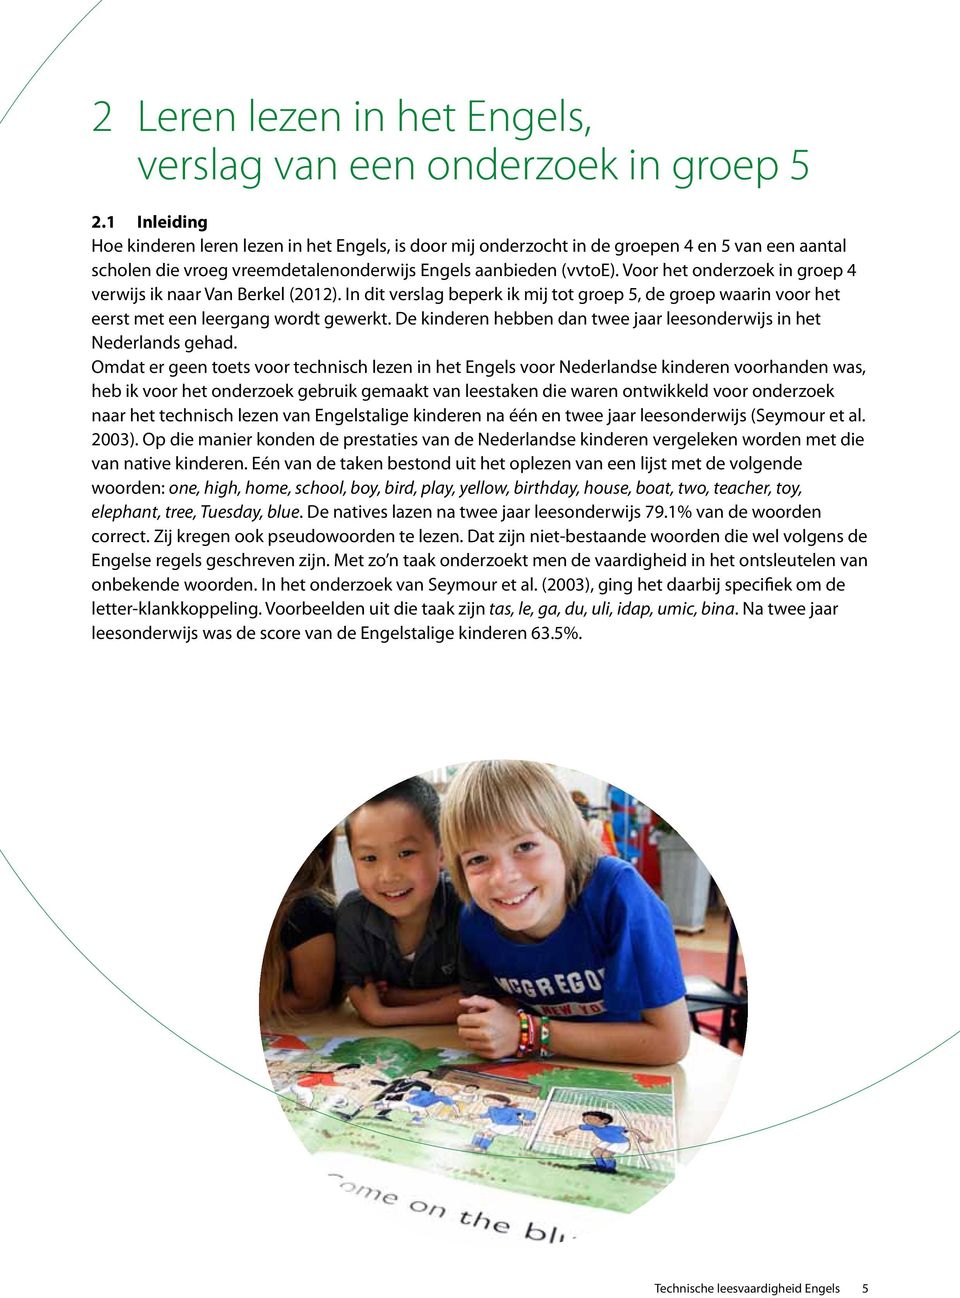 Voor het onderzoek in groep 4 verwijs ik naar Van Berkel (2012). In dit verslag beperk ik mij tot groep 5, de groep waarin voor het eerst met een leergang wordt gewerkt.